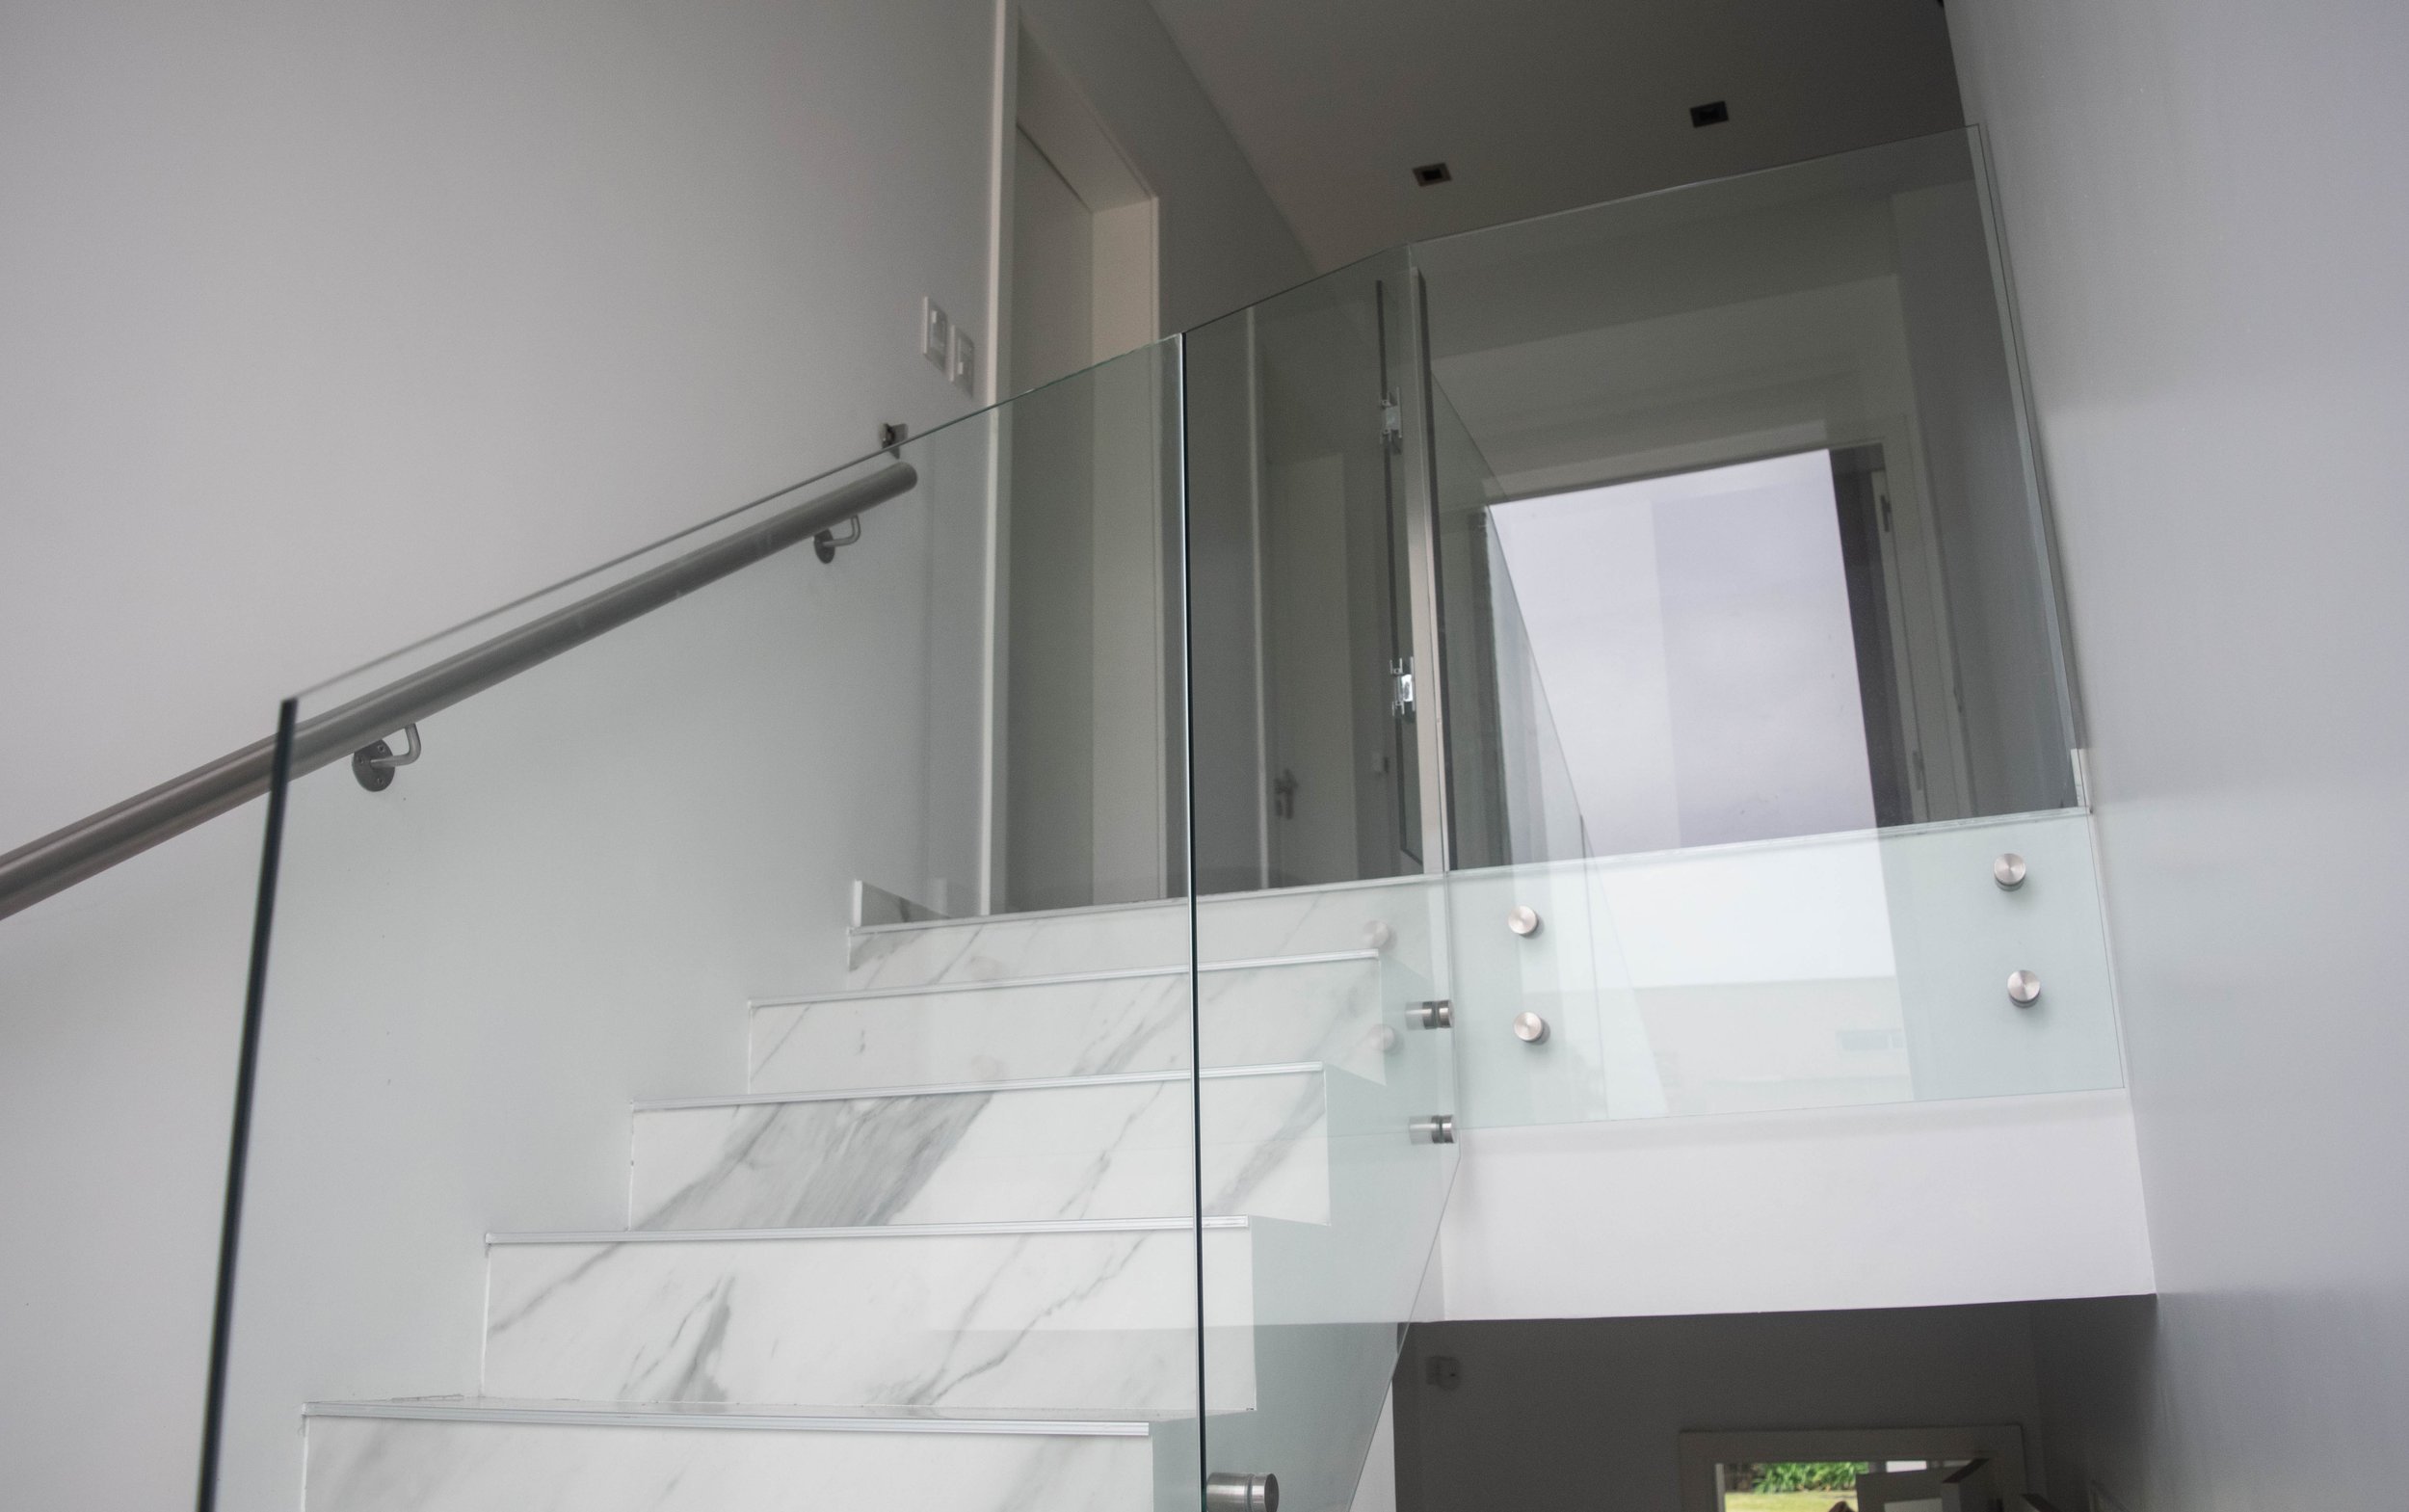 Barandas para escaleras de interior — Arkimetal barandas y escaleras